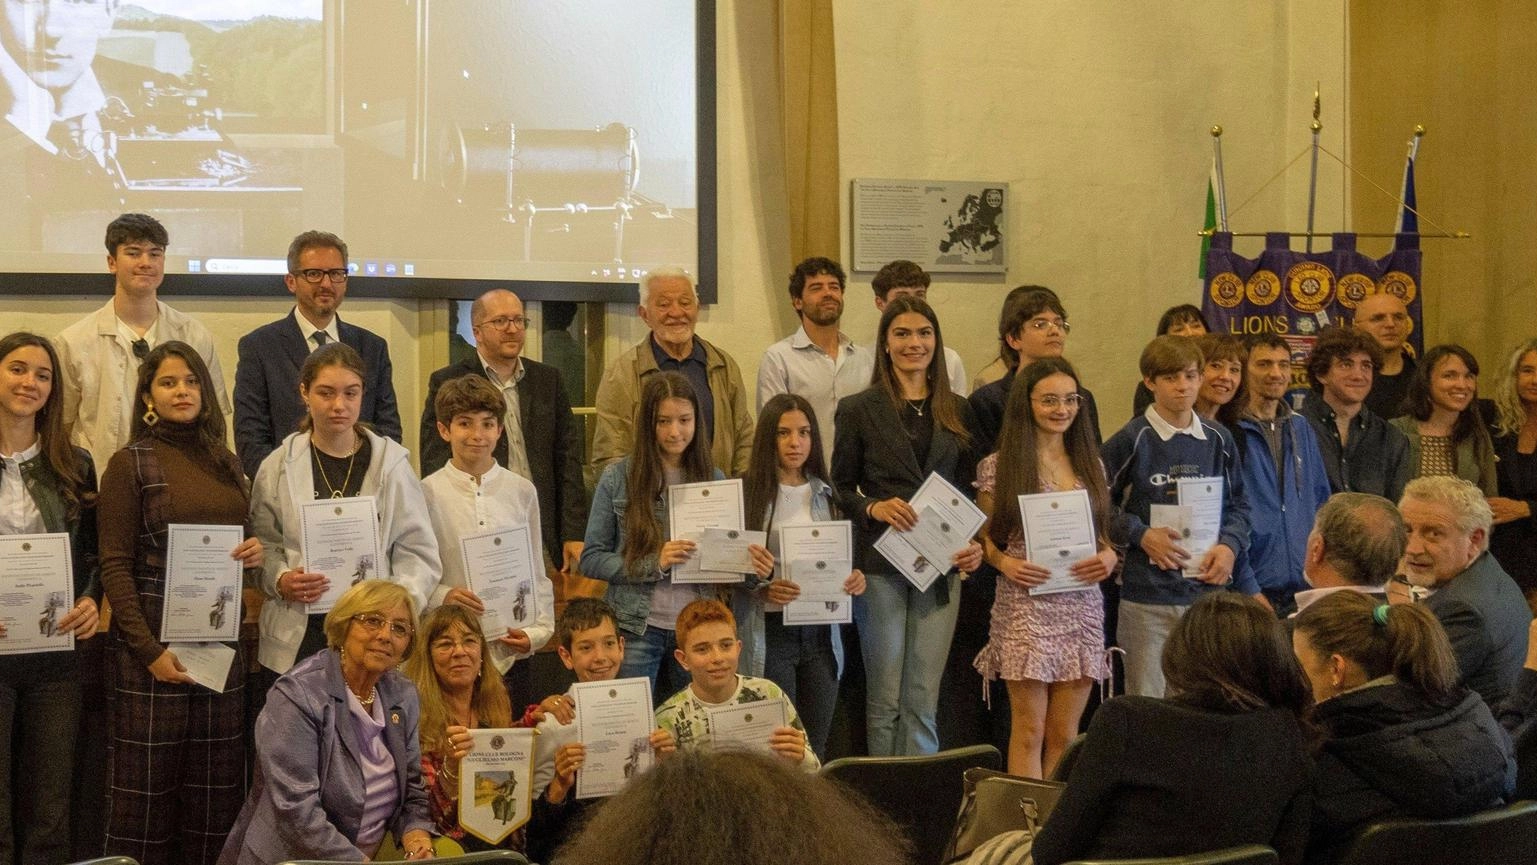 Il Lions Club Bologna Guglielmo Marconi premia diciannove studenti per impegno e merito scolastico alla Fondazione Marconi di Sasso.